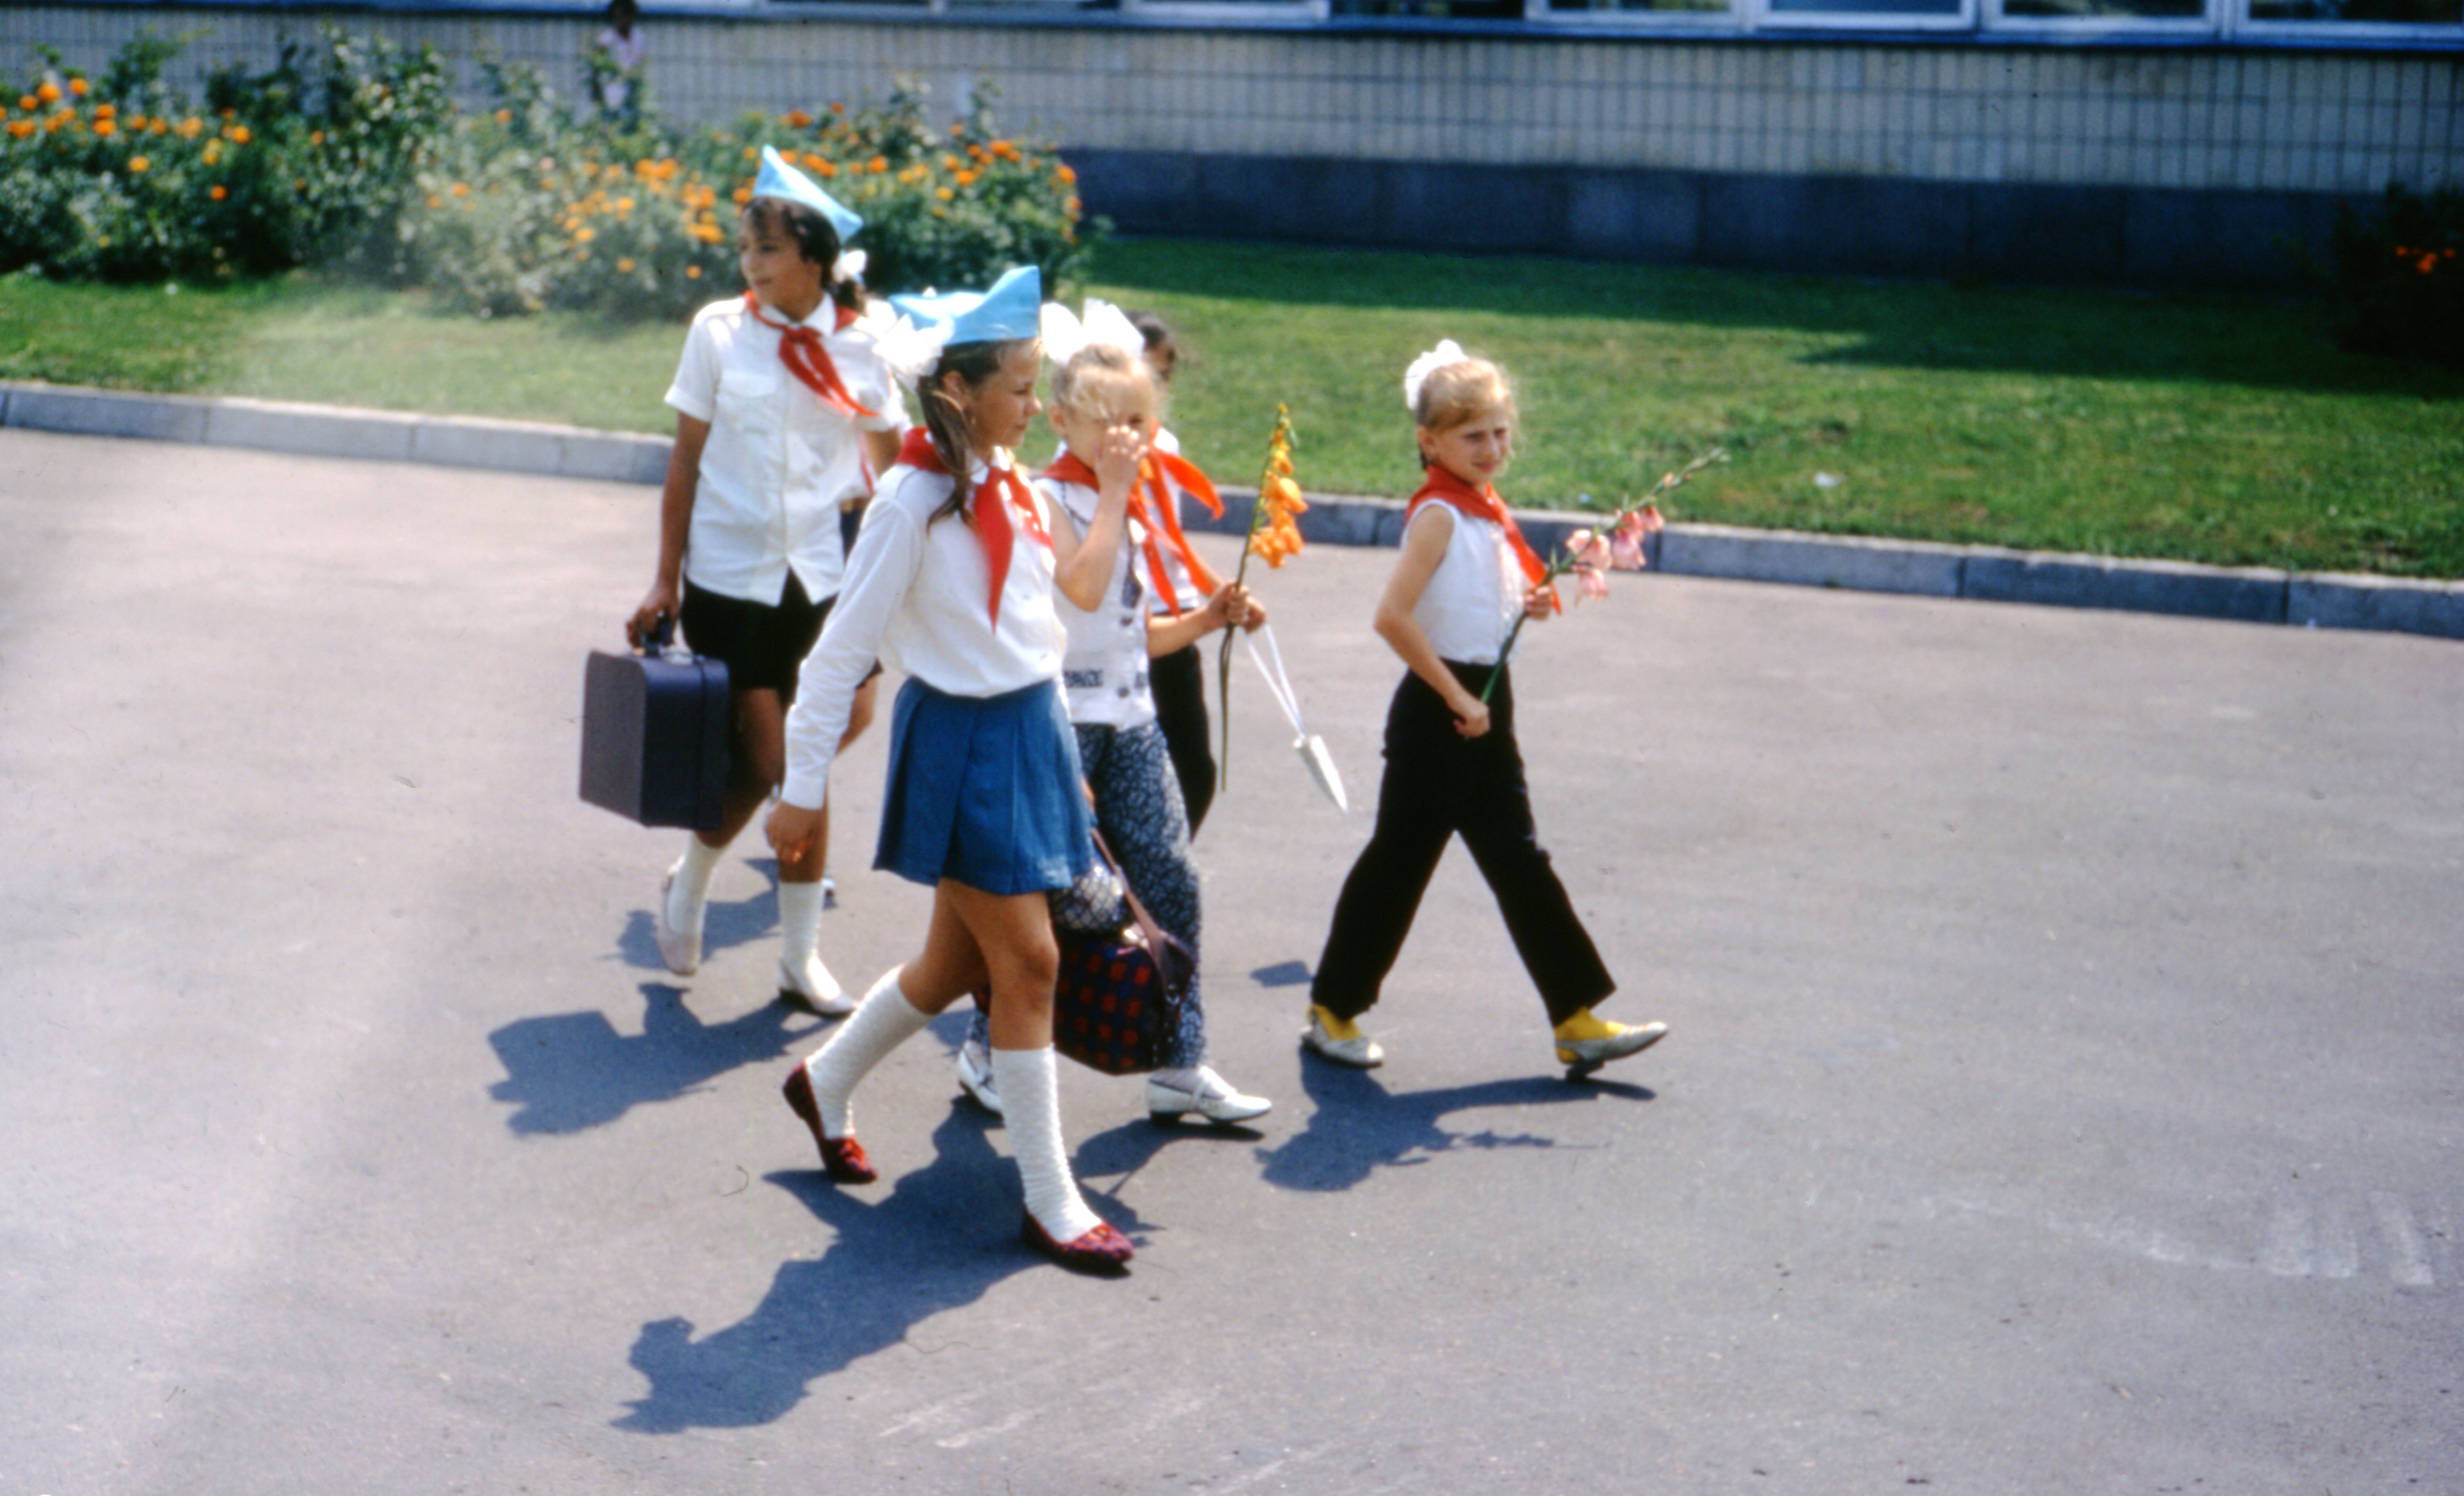 Дети в пионерской форме в Ленинграде (ныне Санкт-Петербург), СССР, 1972 г. Фото: Томас Т. Хаммонд